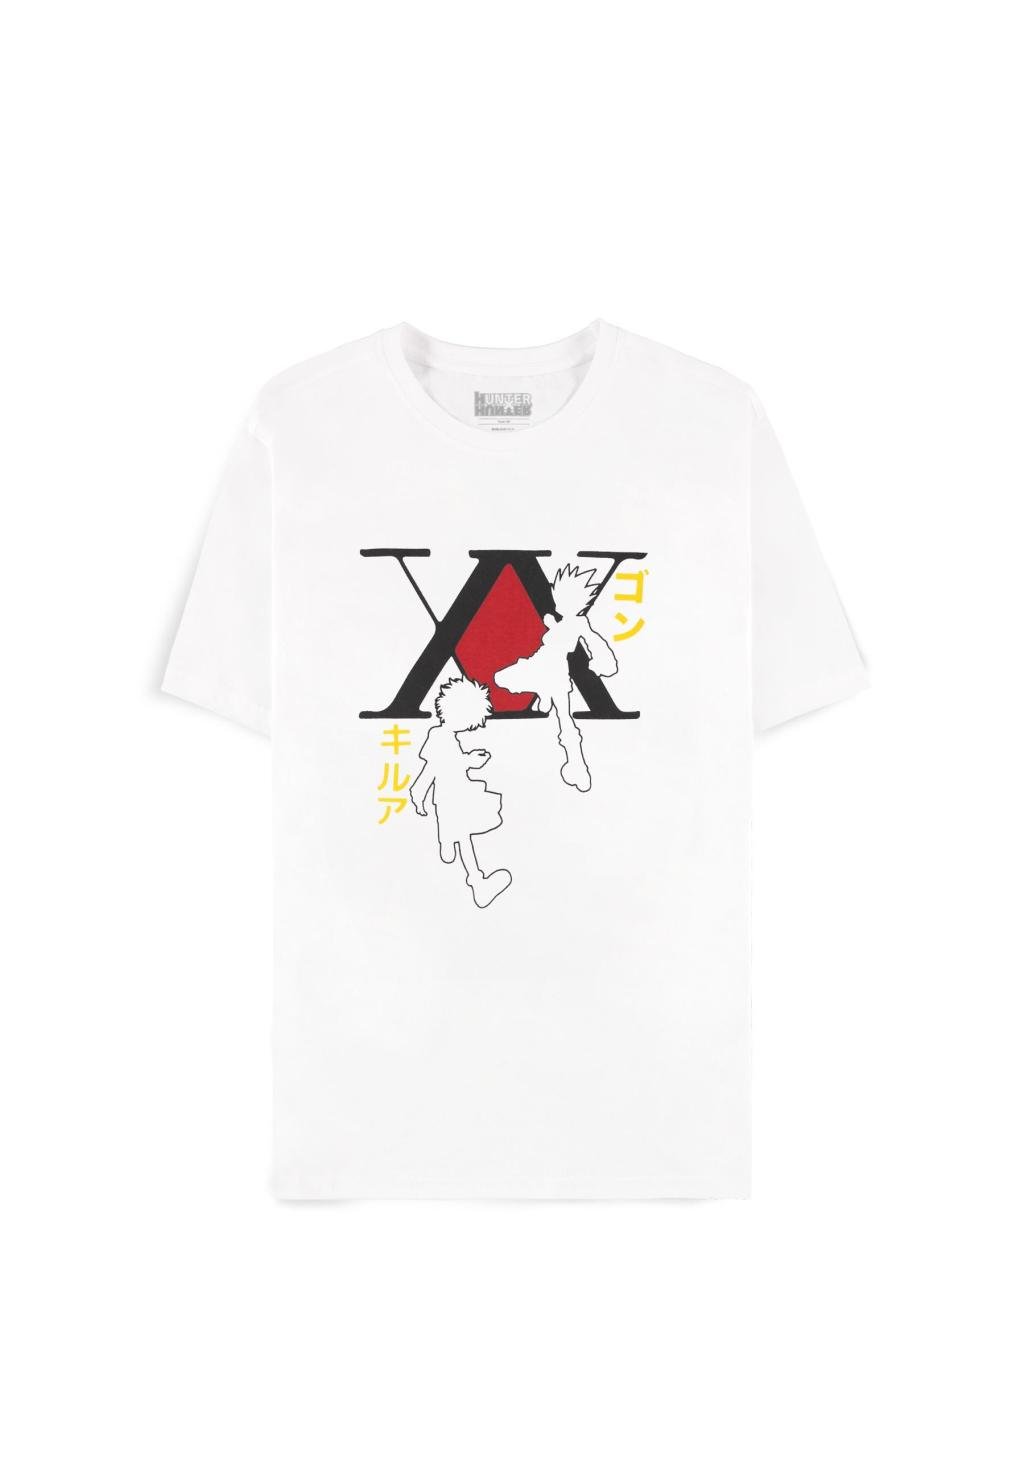 HUNTER X HUNTER - Gon & Kirua - Men's T-shirt (S)